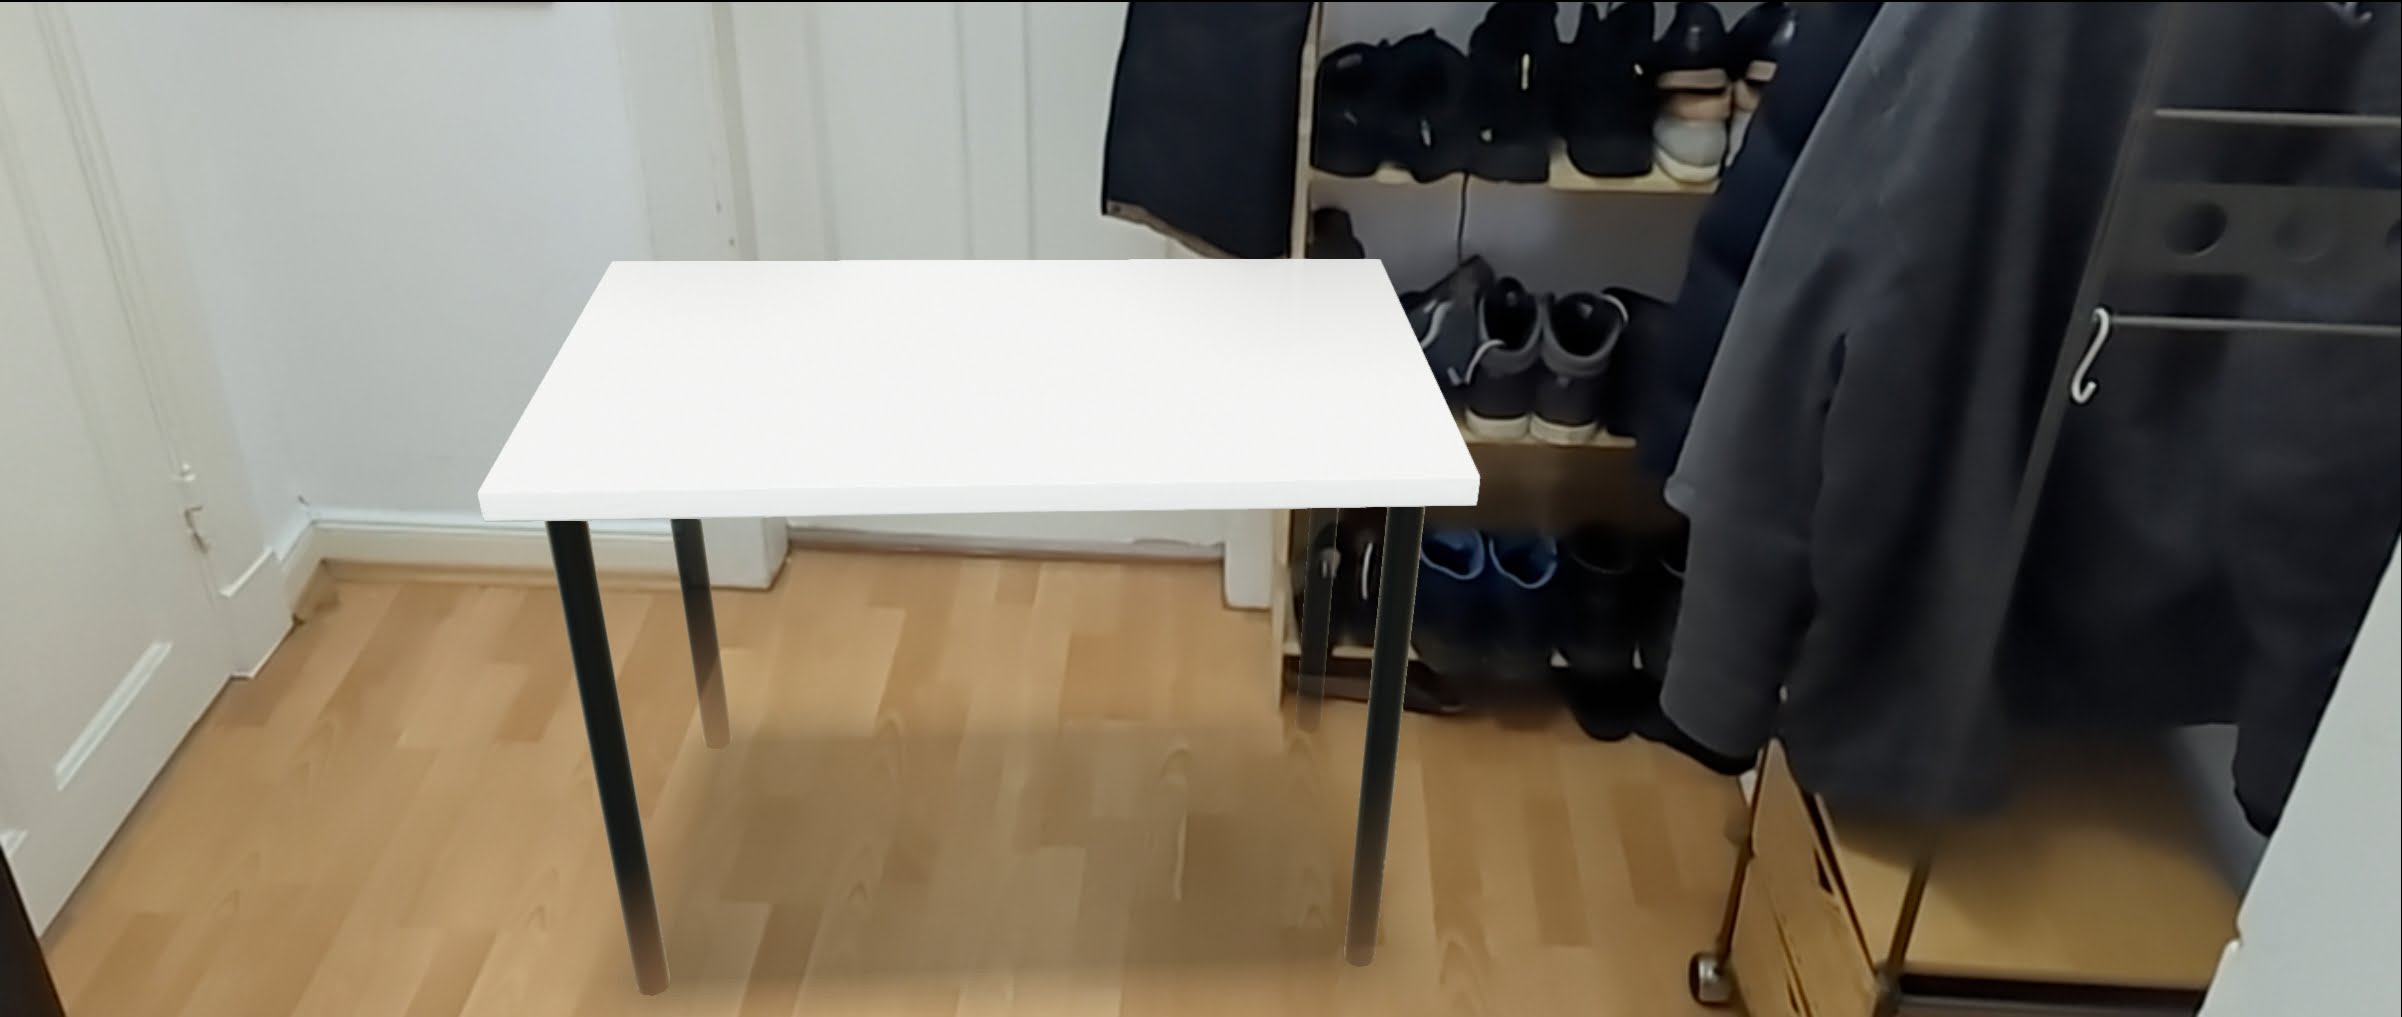 Ikea bringt Produkte als AR-Modelle in die Google-Suche